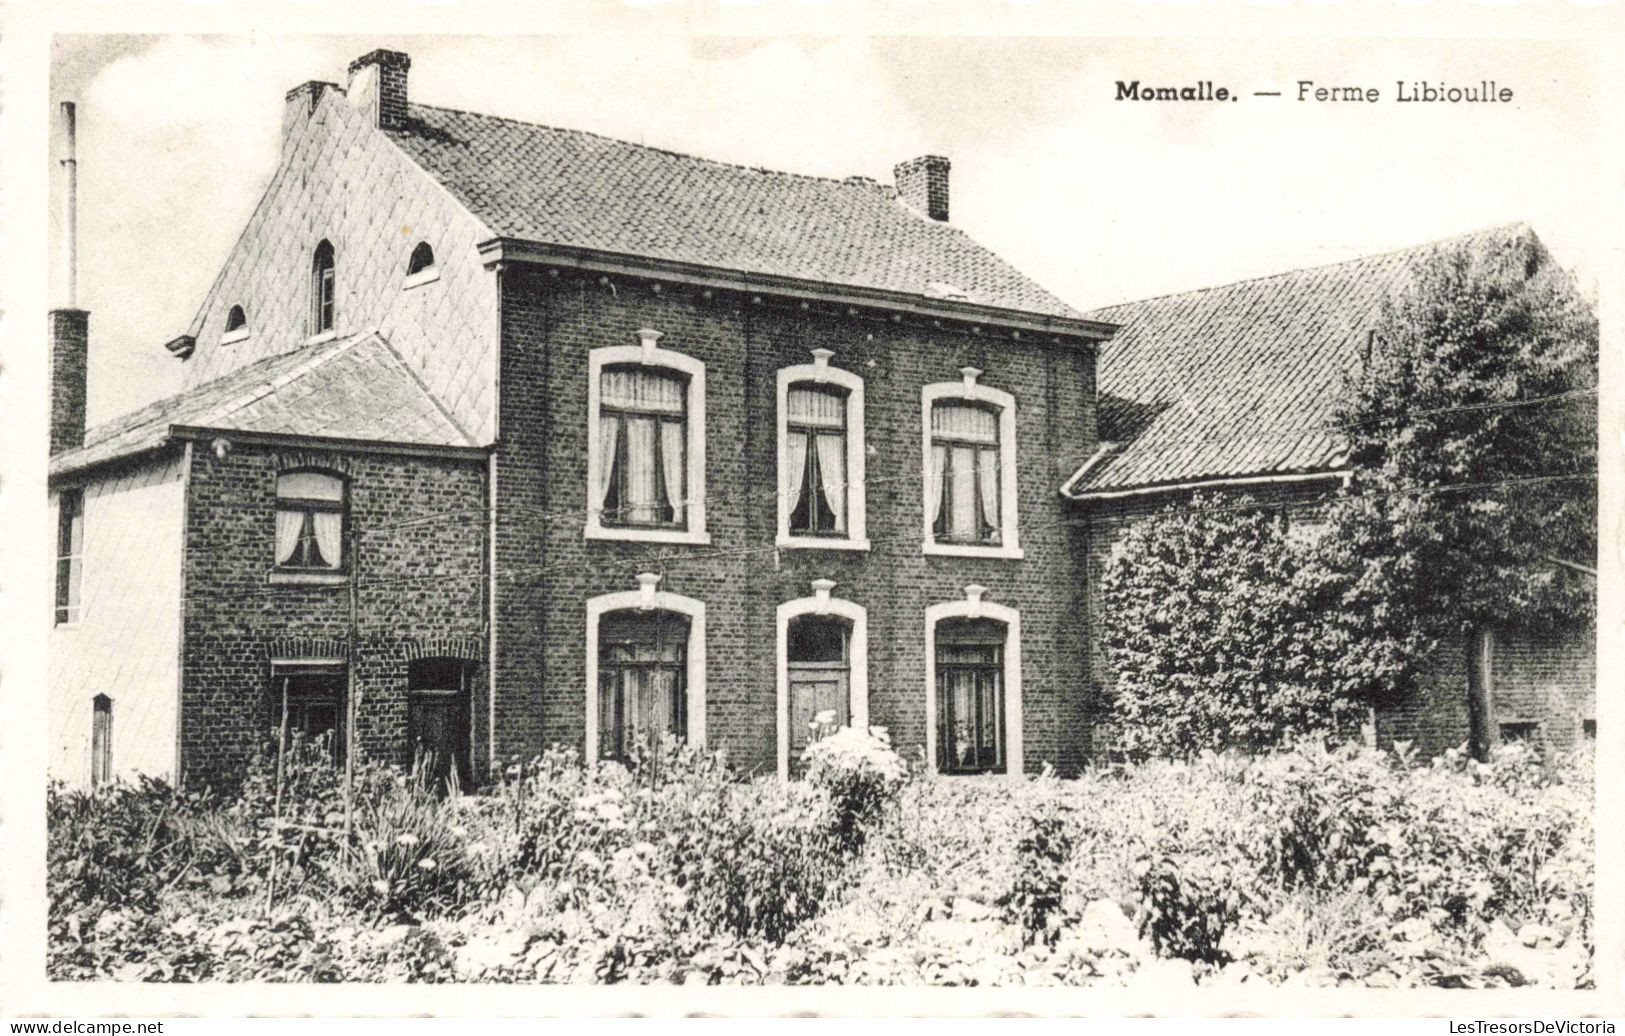 BELGIQUE - Momalle - Ferme Libioulle - Carte Postale Ancienne - Remicourt